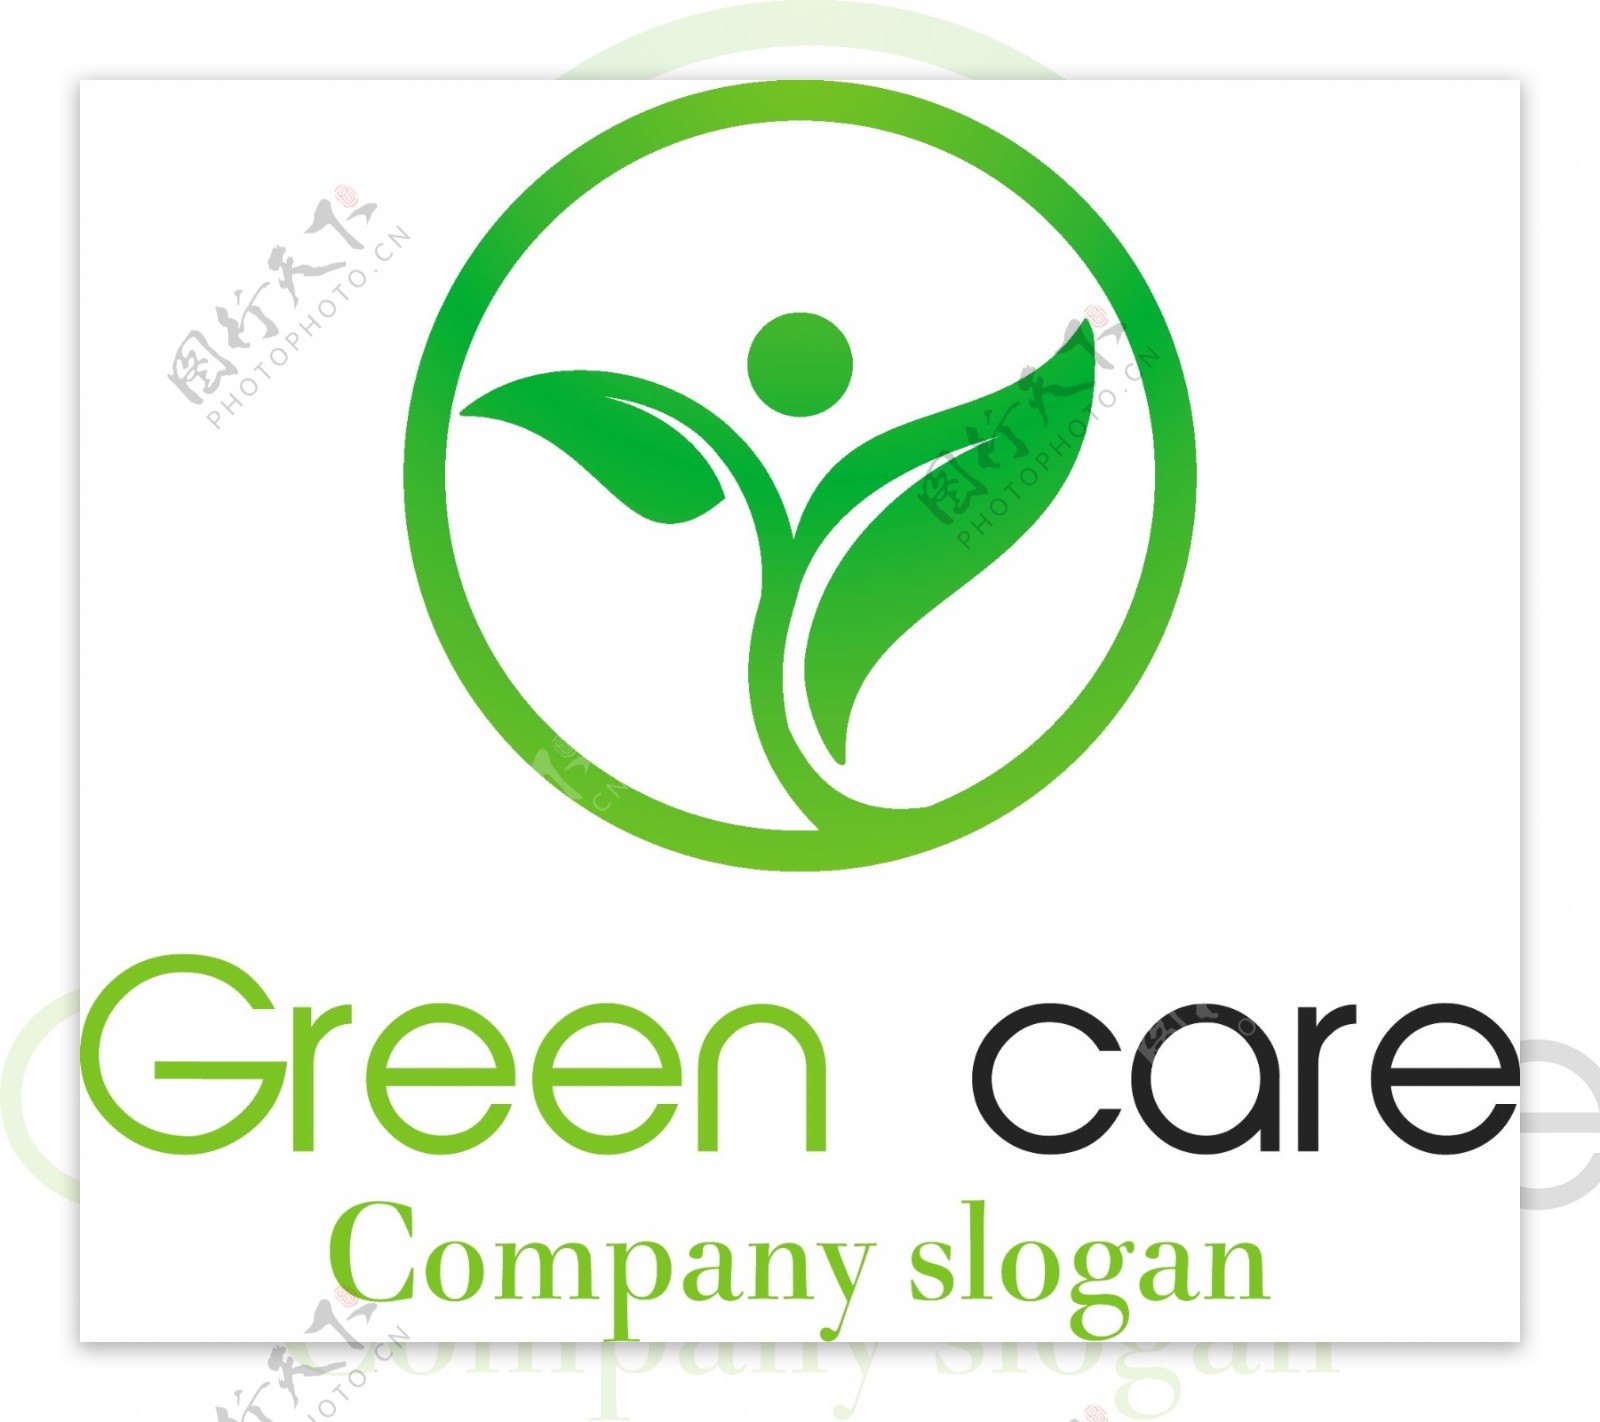 互联网绿色能源用途标识logo